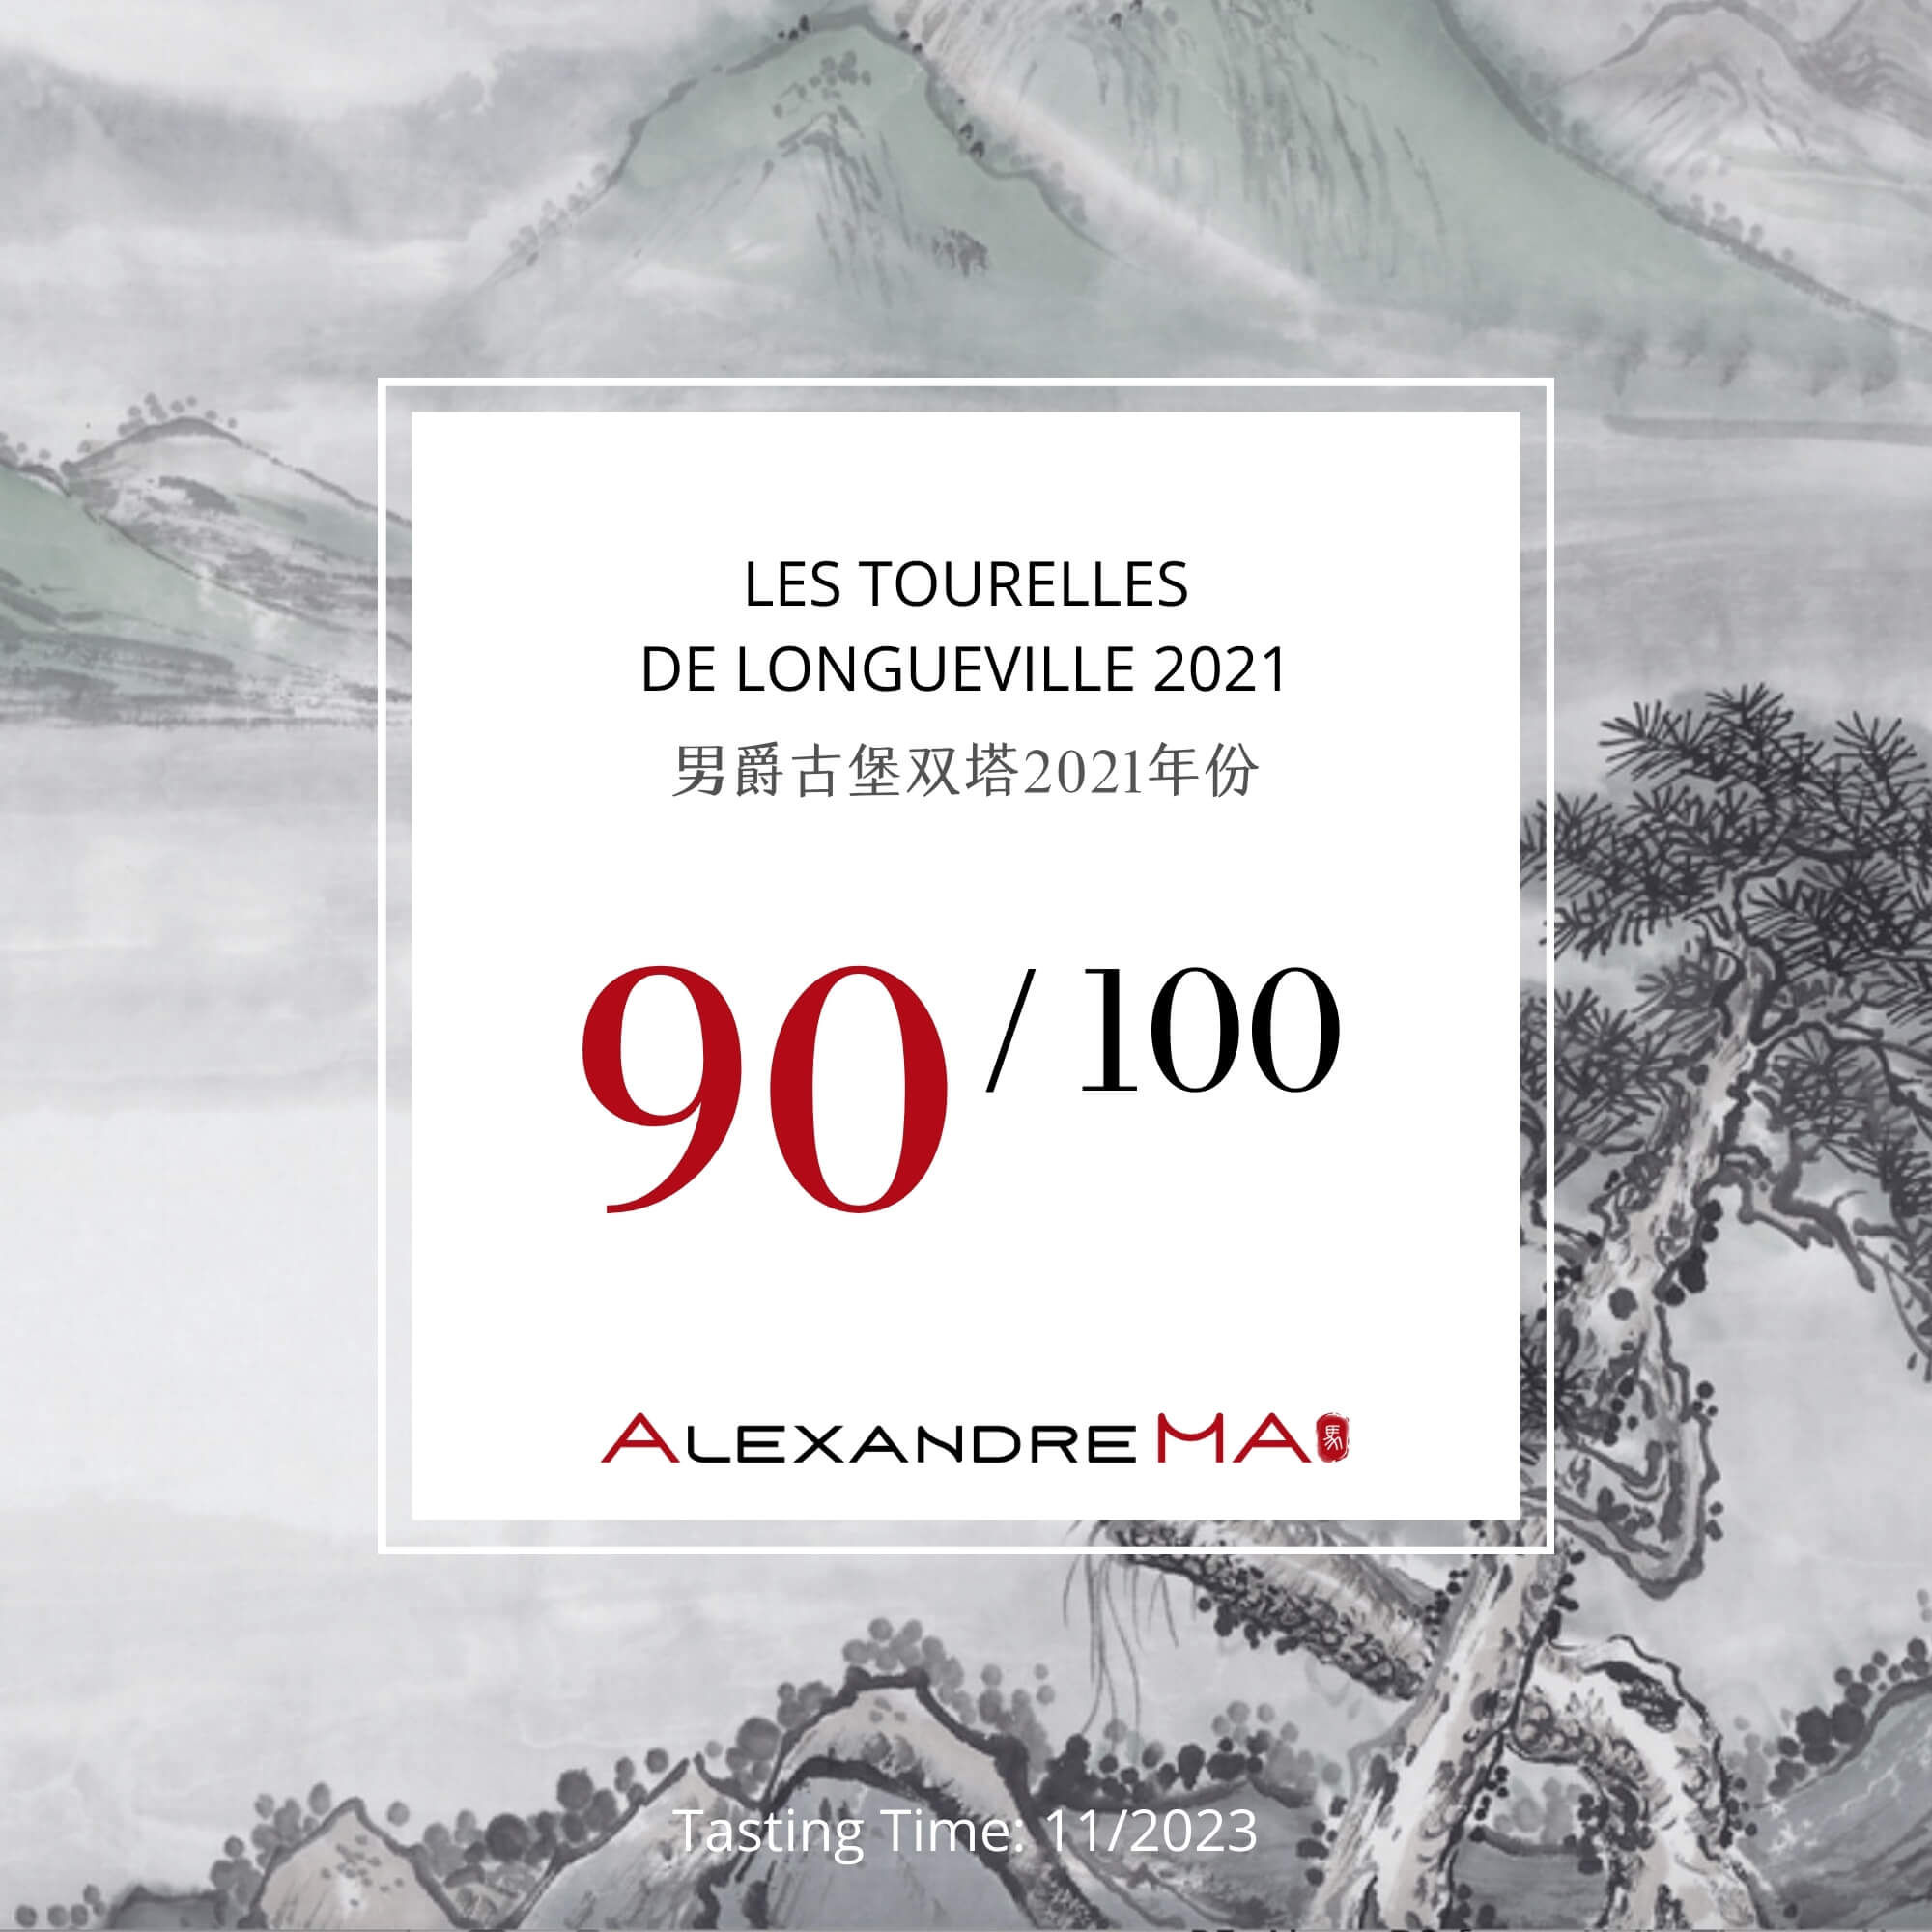 Les Tourelles de Longueville 2021 - Alexandre MA